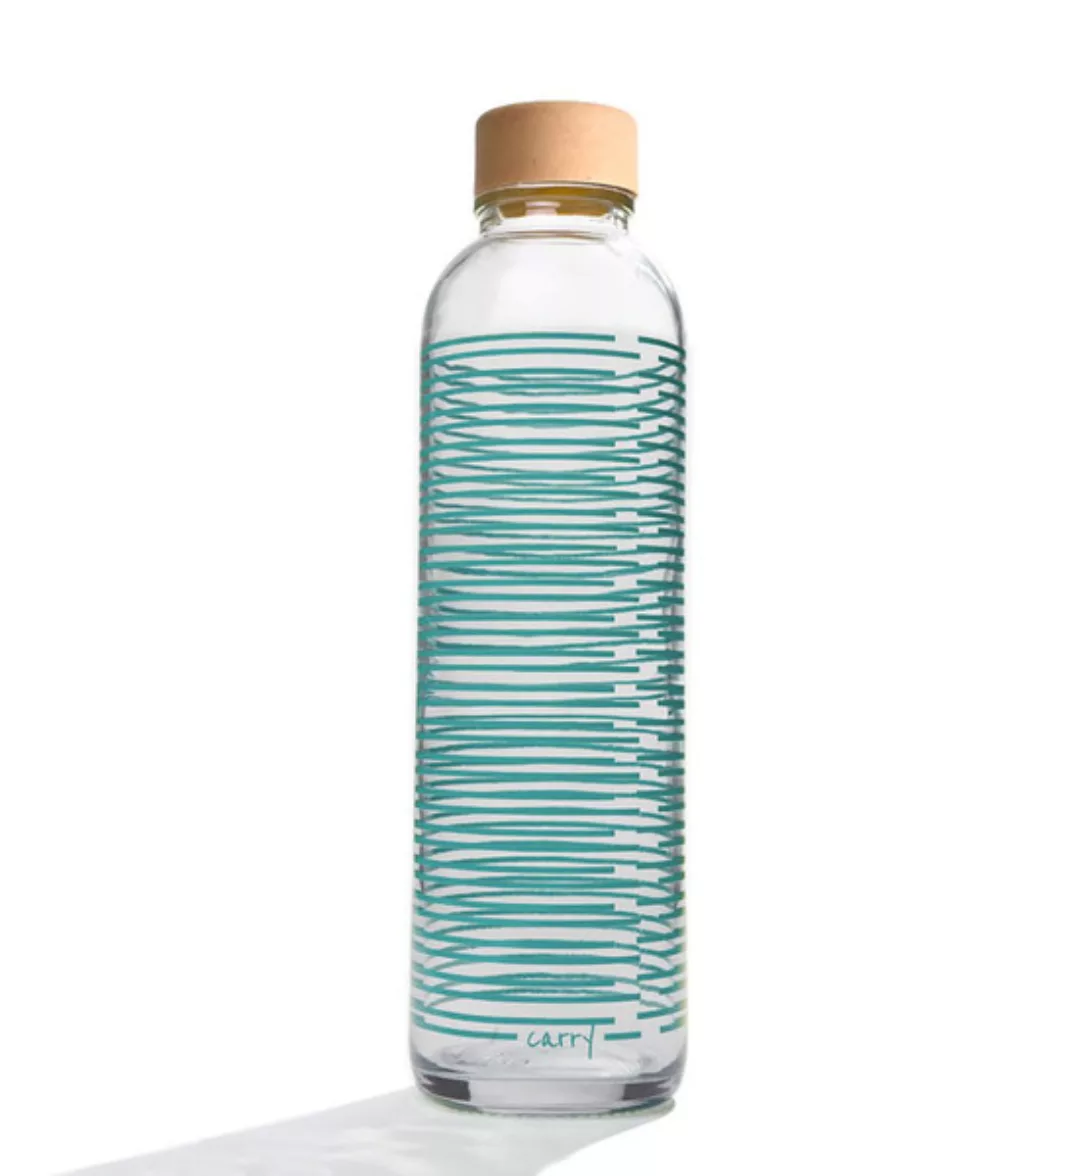 Carry Bottles Glastrinkflasche 0.7l Verschiedene Designs günstig online kaufen